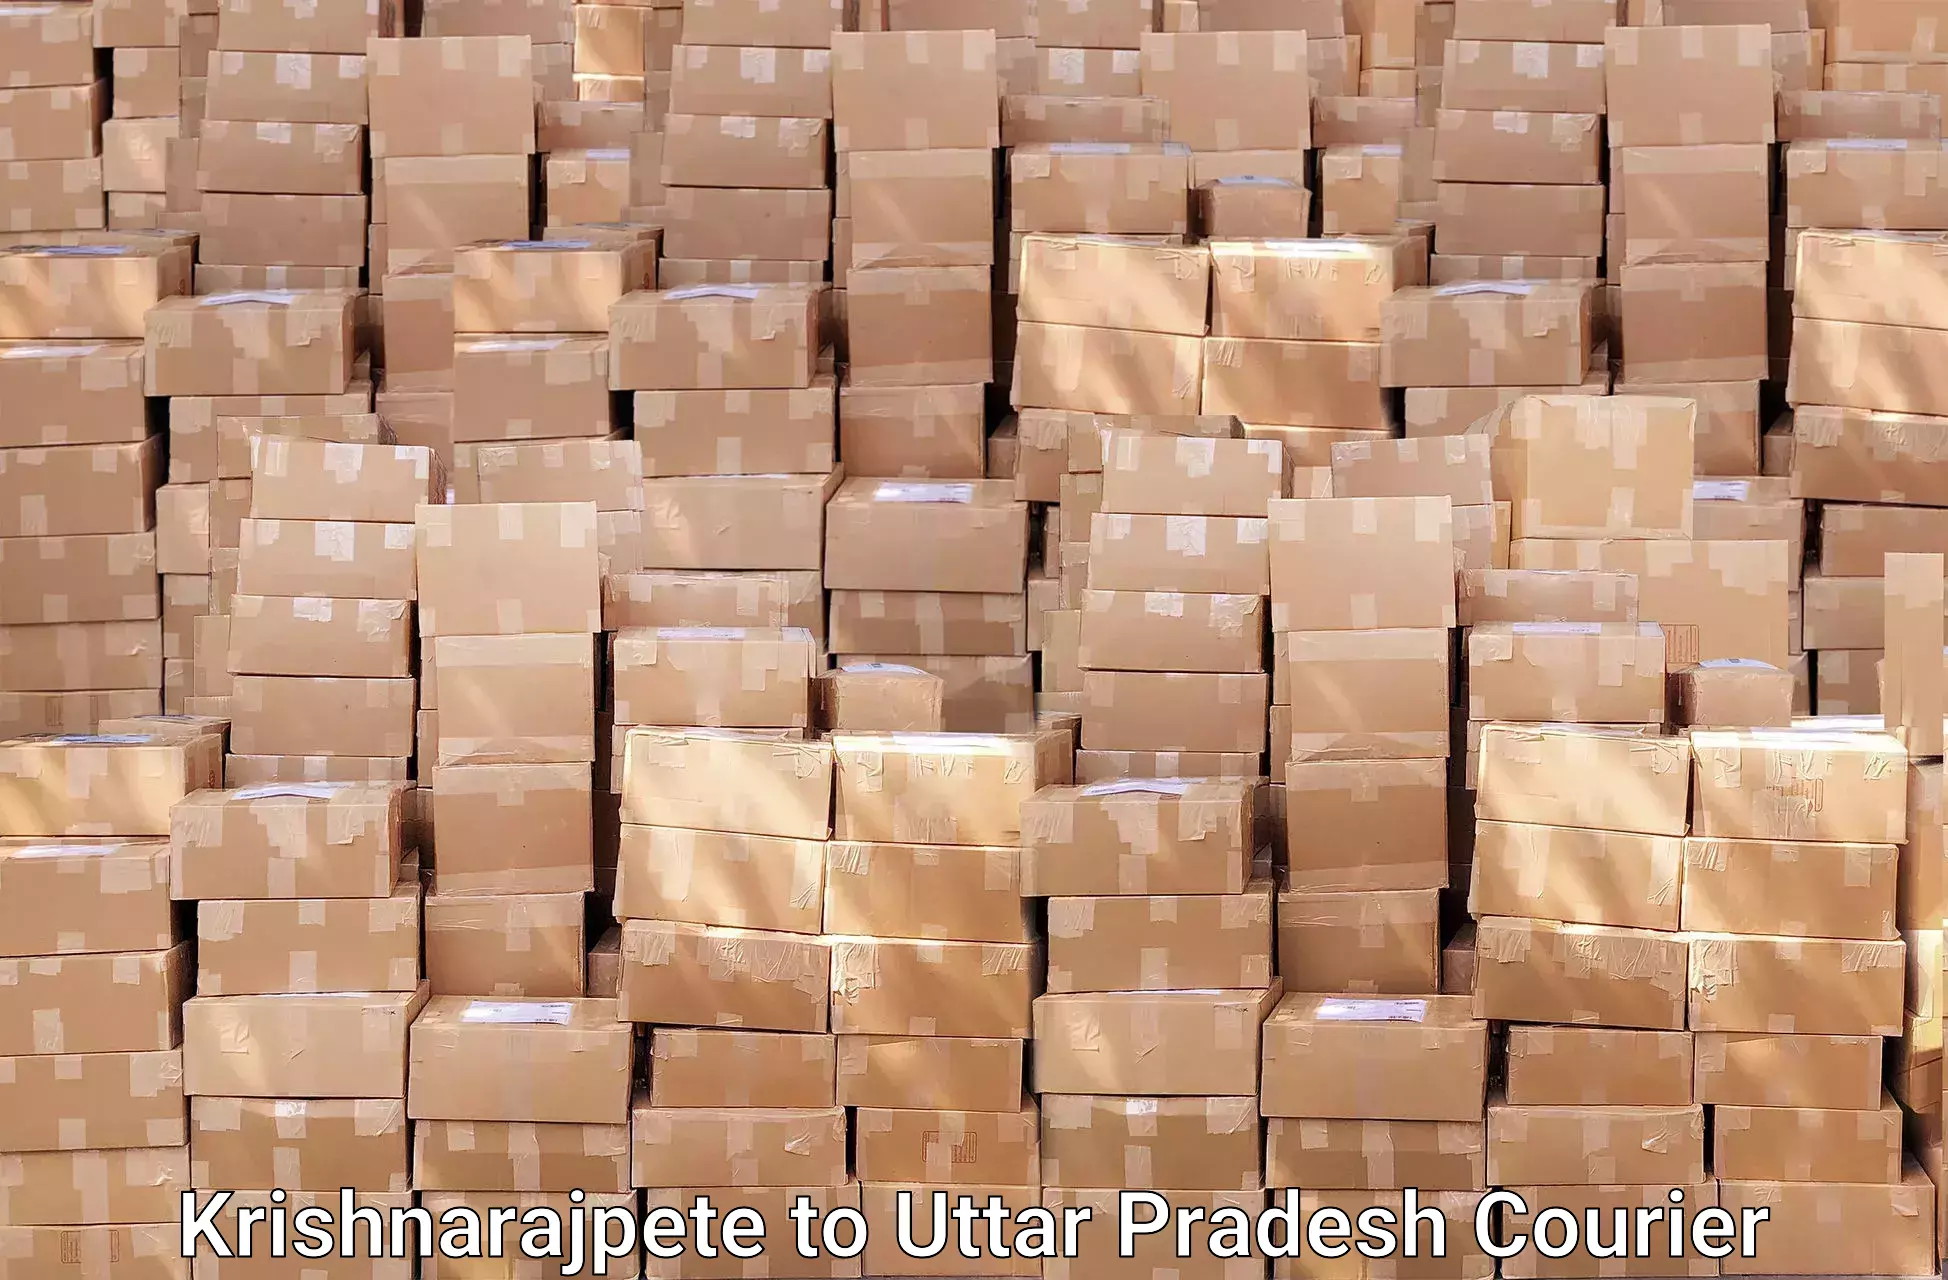 Efficient relocation services Krishnarajpete to Uttar Pradesh